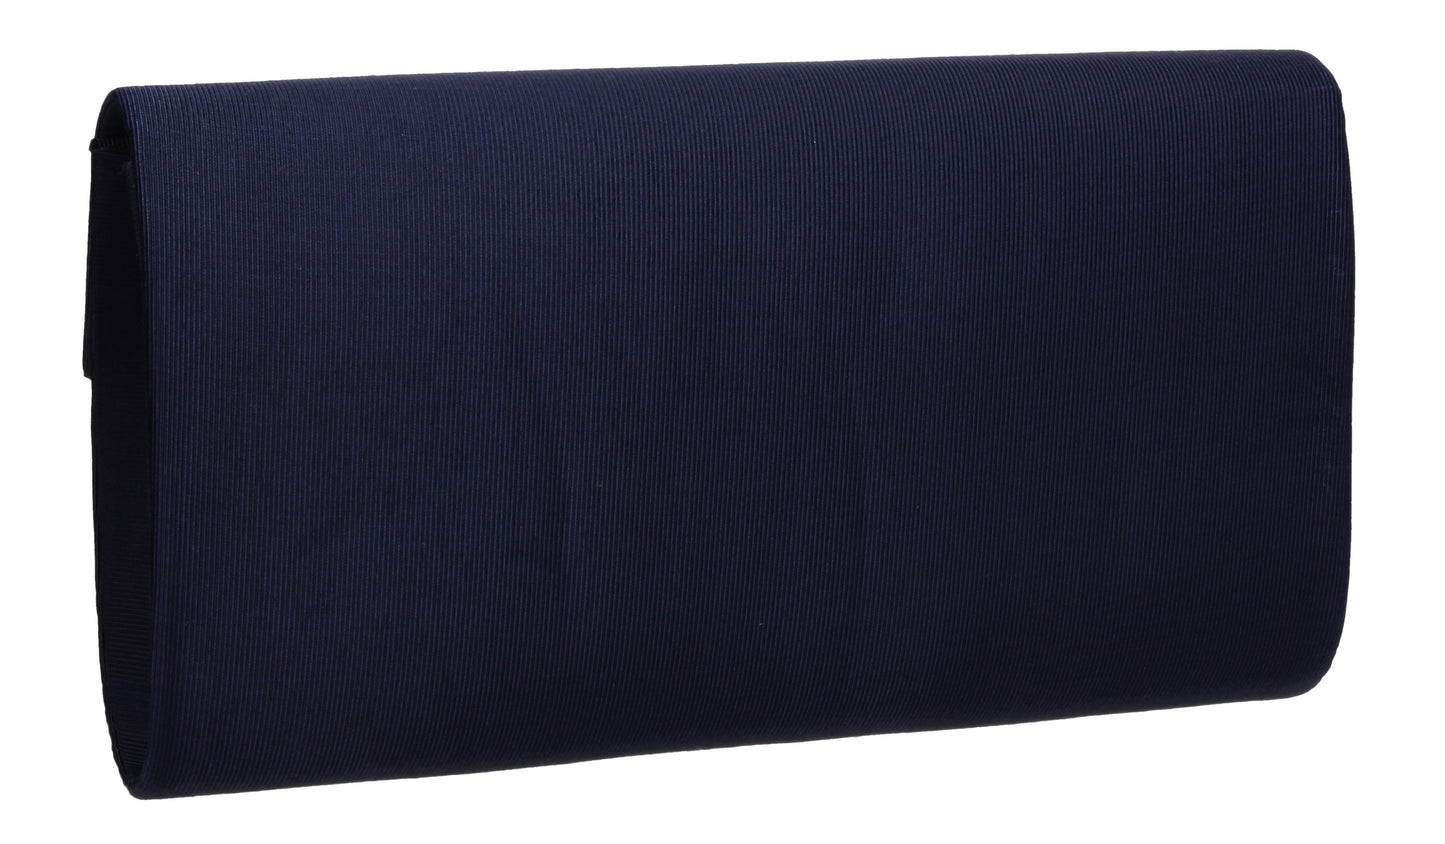 Alison Satin Envelope Clutch Bag Navy Blue